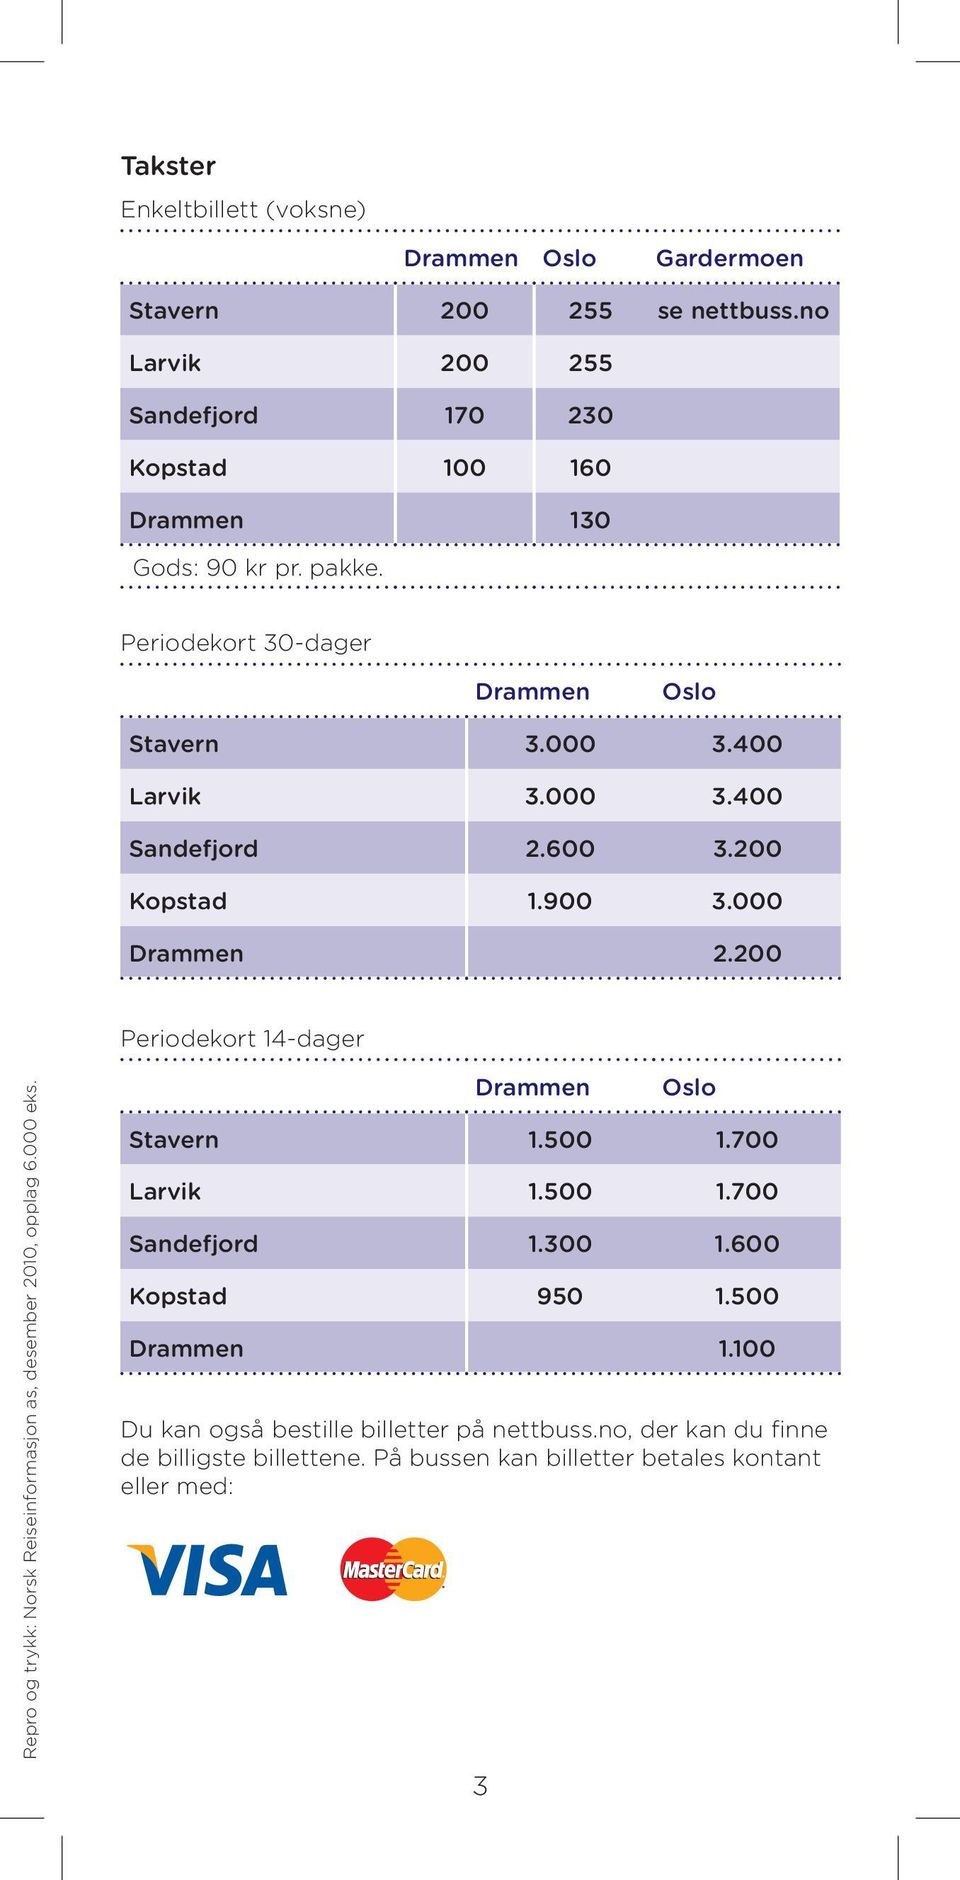 600 3.200 Kopstad 1.900 3.000 Drammen 2.200 Periodekort 14-dager Repro og trykk: Norsk Reiseinformasjon as, desember 2010, opplag 6.000 eks.